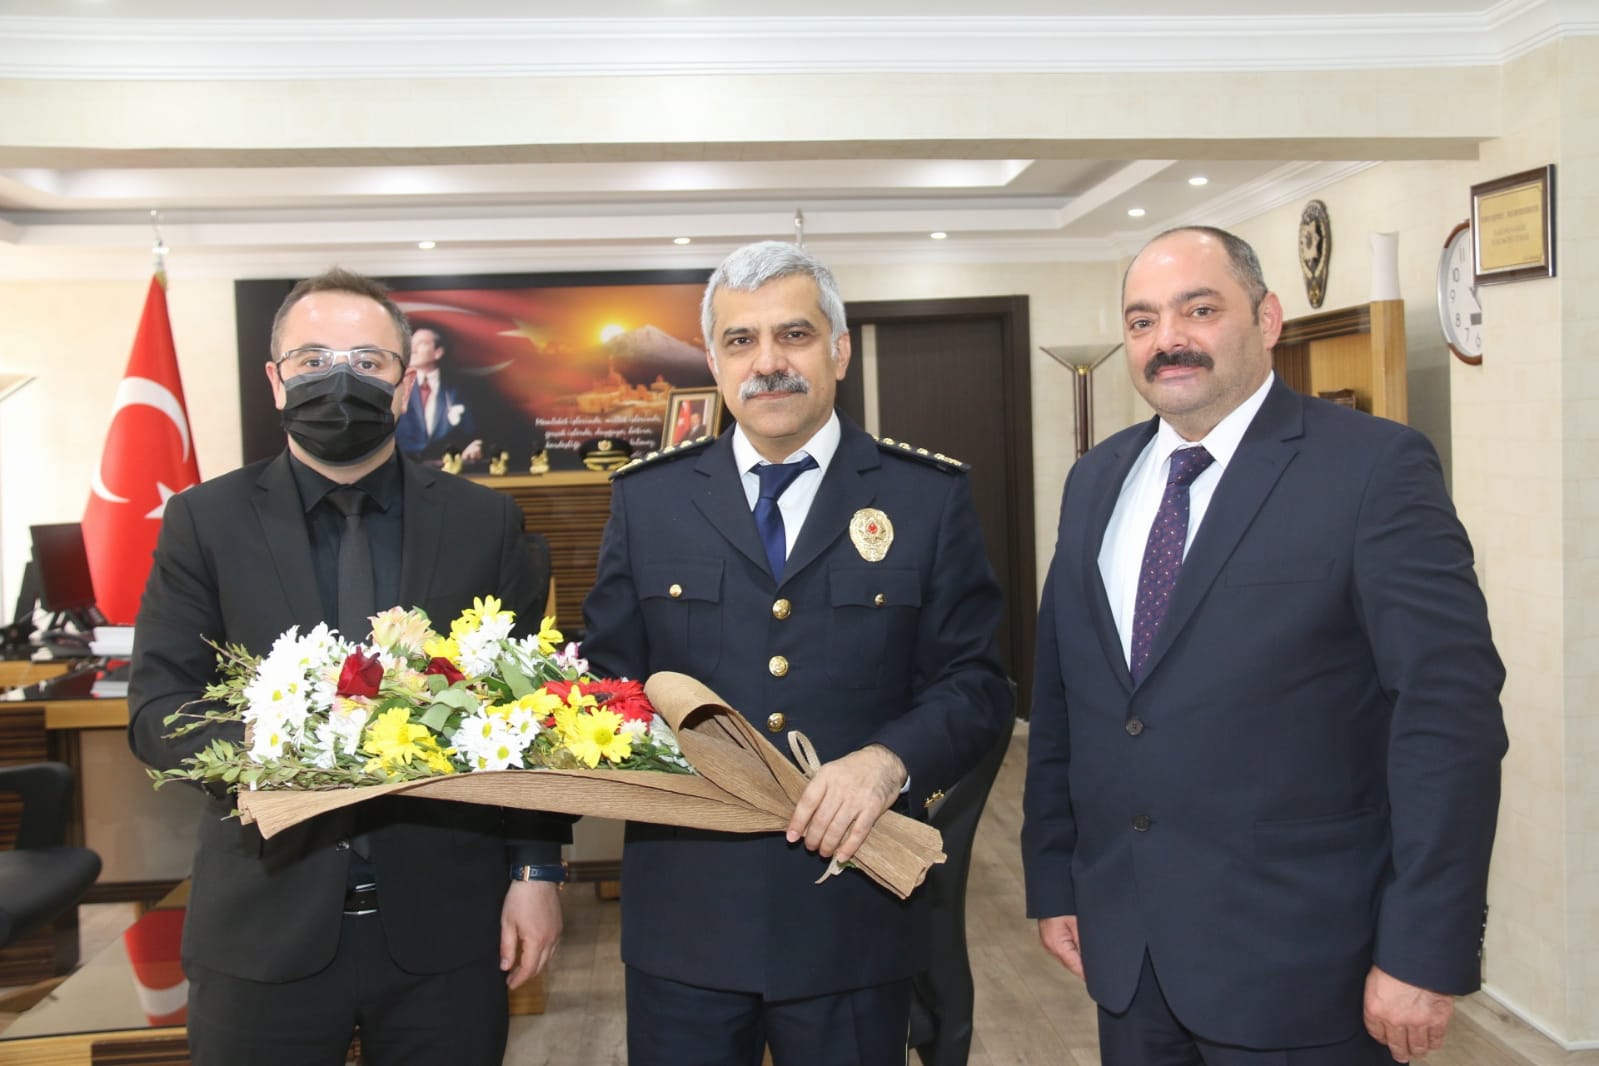 Ağrı Emniyet Müdürlüğü / Maske😷Mesafe↔️Temizlik🧼 on Twitter: "Türk Polis  Teşkilatımızın 176.Yıl Dönümü kapsamında, İl Göç İdaresi Müdürü Sayın  Mücahit YUMAK ve Ağrı Çevre ve Şehircilik İl Müdürü Sayın Emin Oral  BÜLBÜLOĞLU, İl